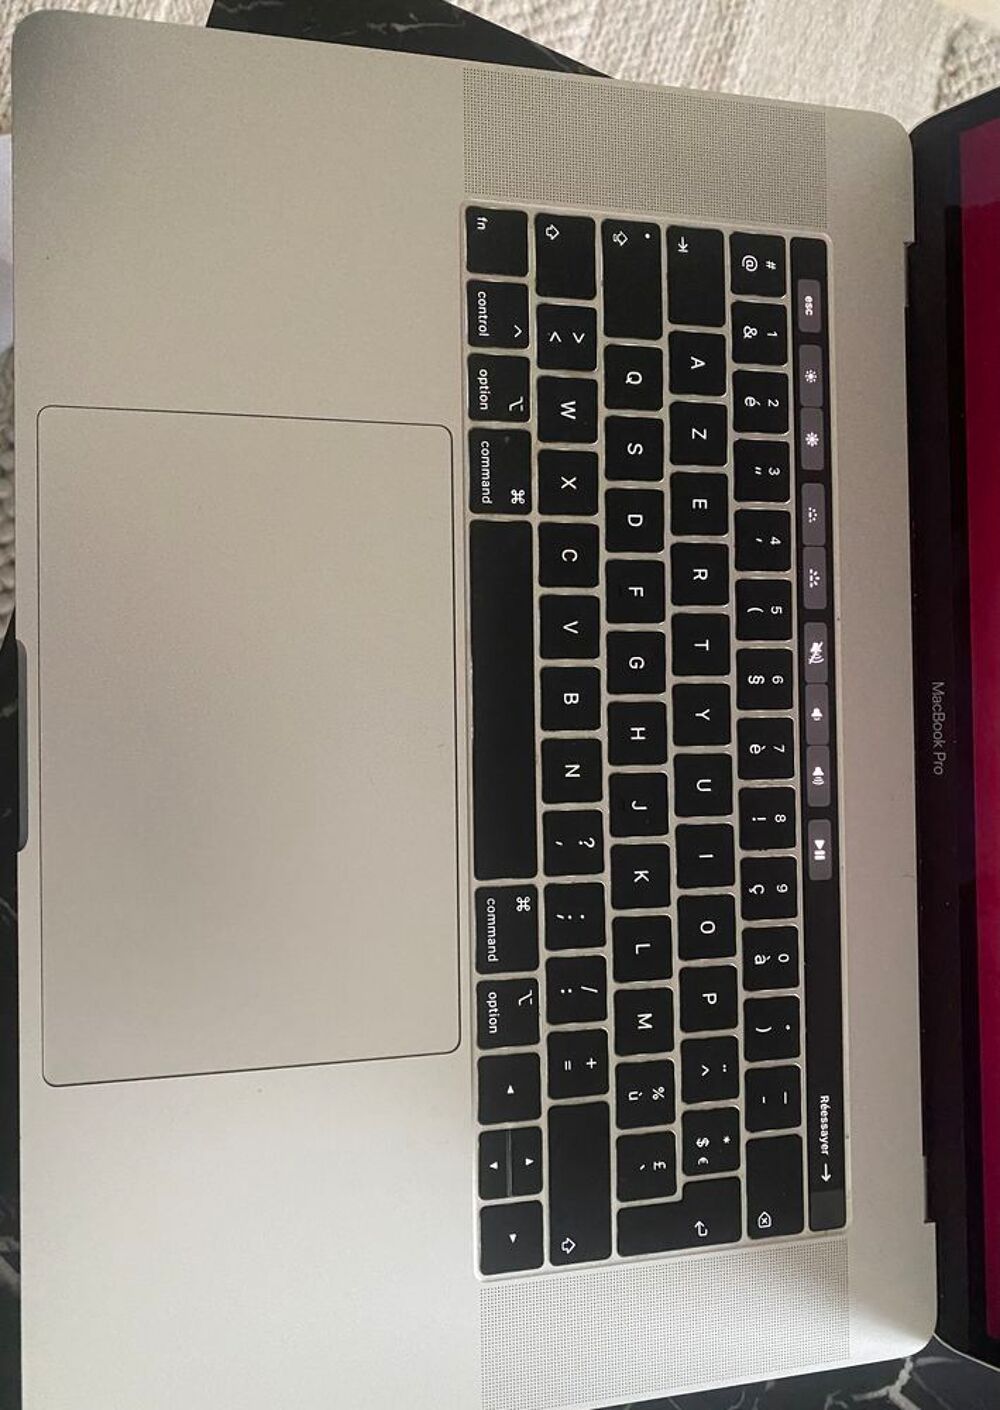 MacBook Pro Touch Bar 15 pouce Matriel informatique